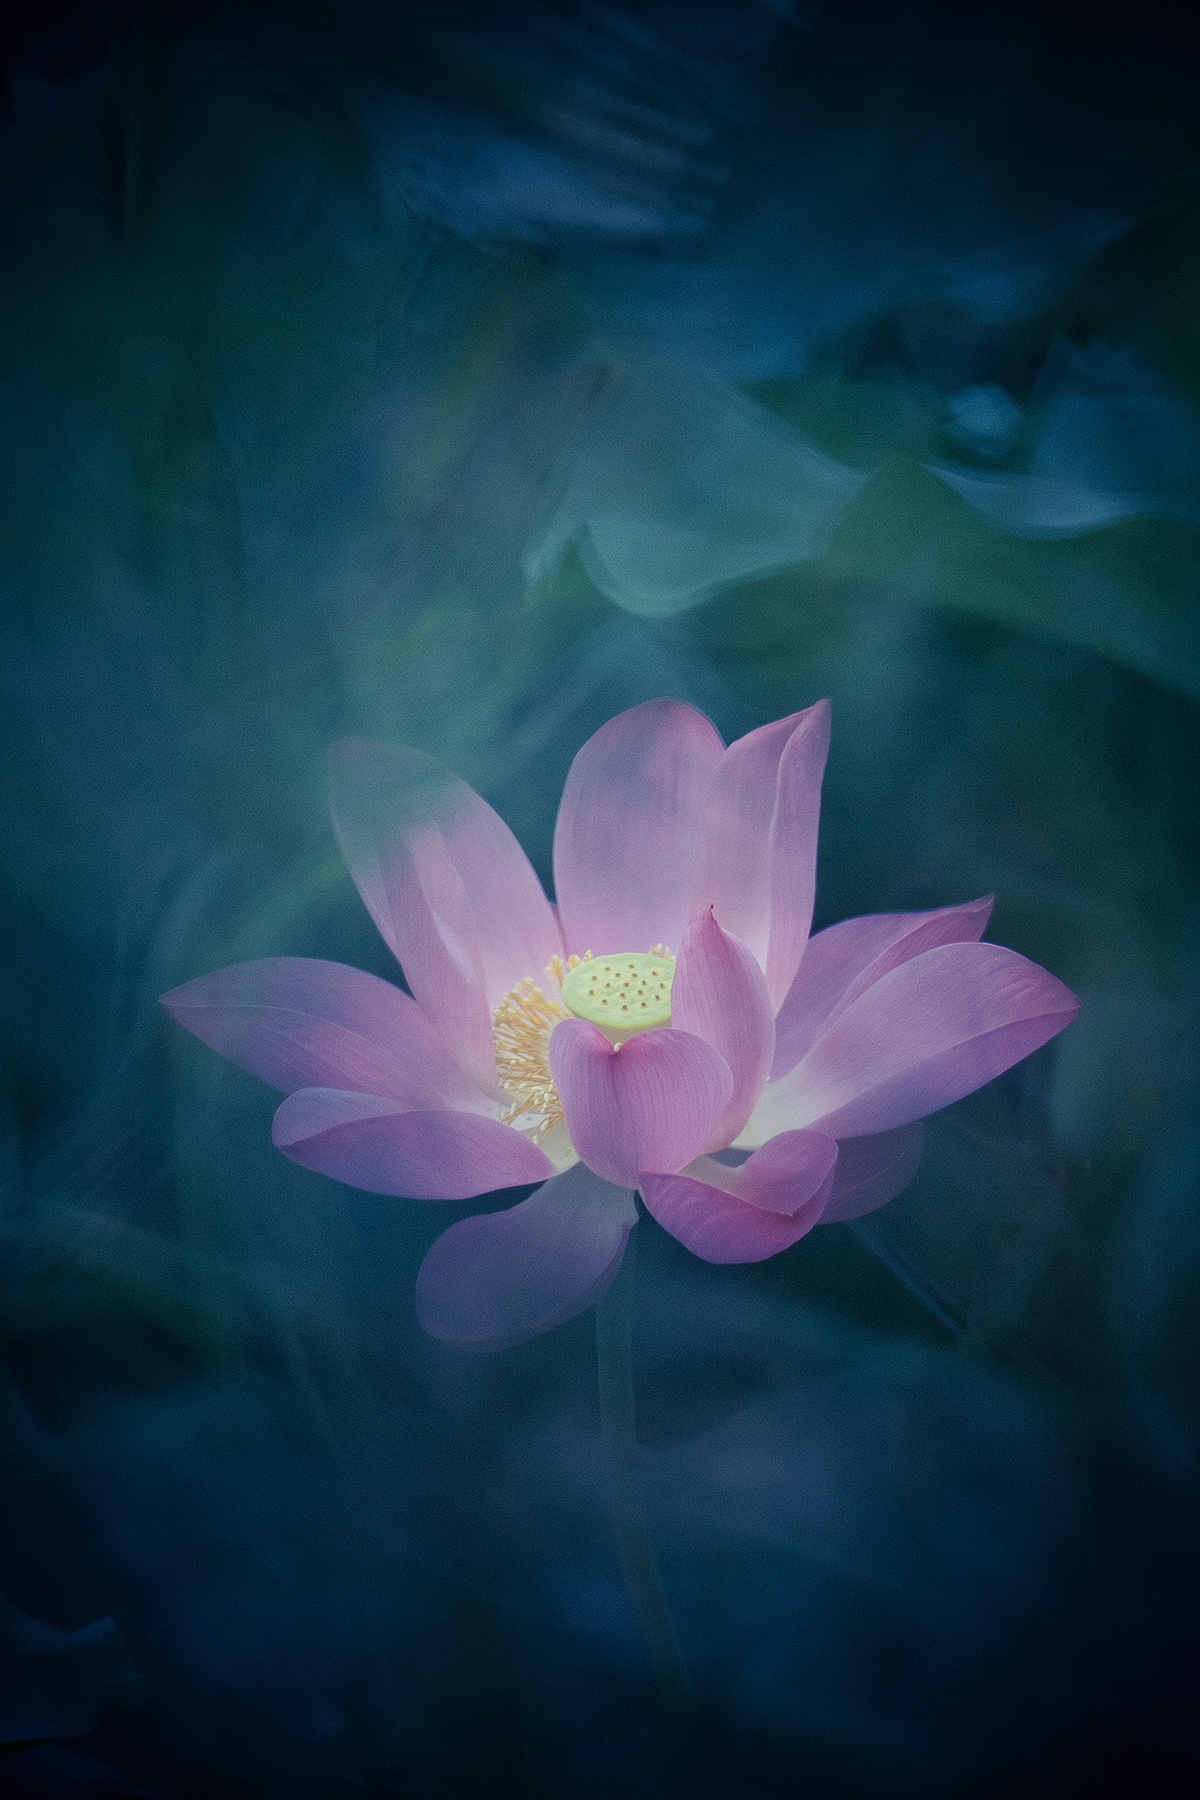 Magic White Lotus flower on black background.Vector 6574449 Vector Art ...